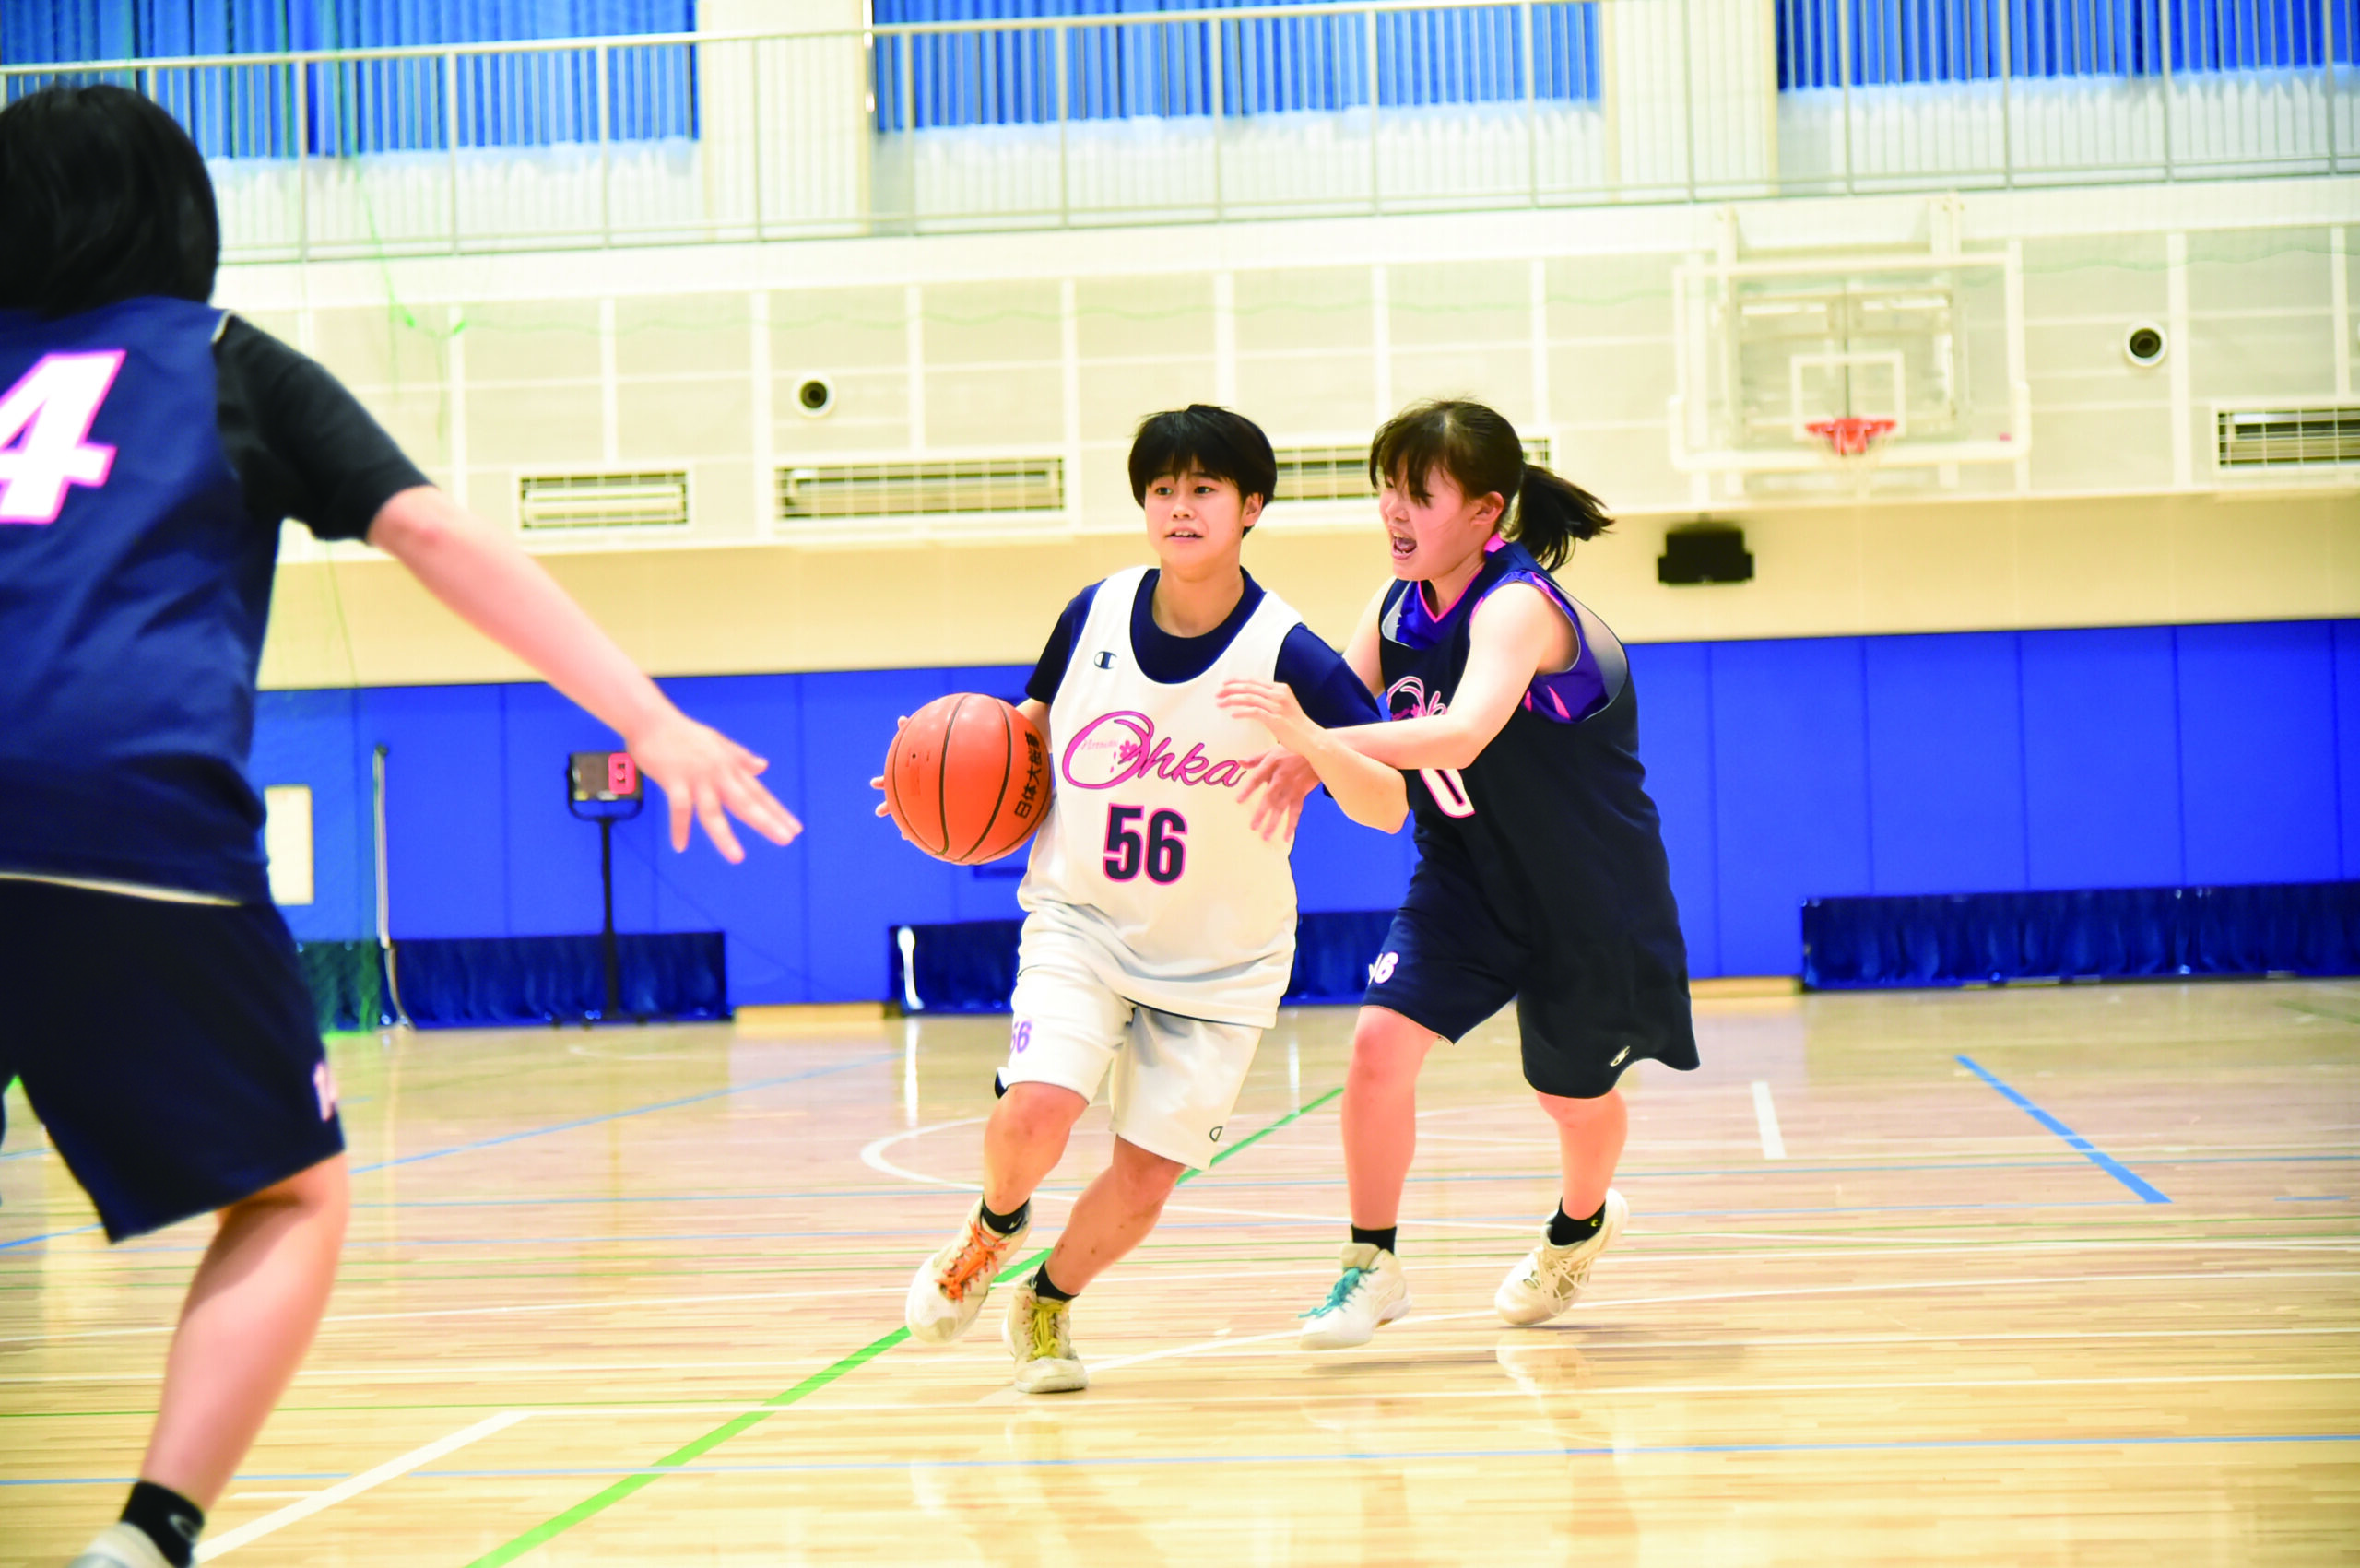 日体大 バスケットボール部 【グリズリー】スウェットハーフパンツ